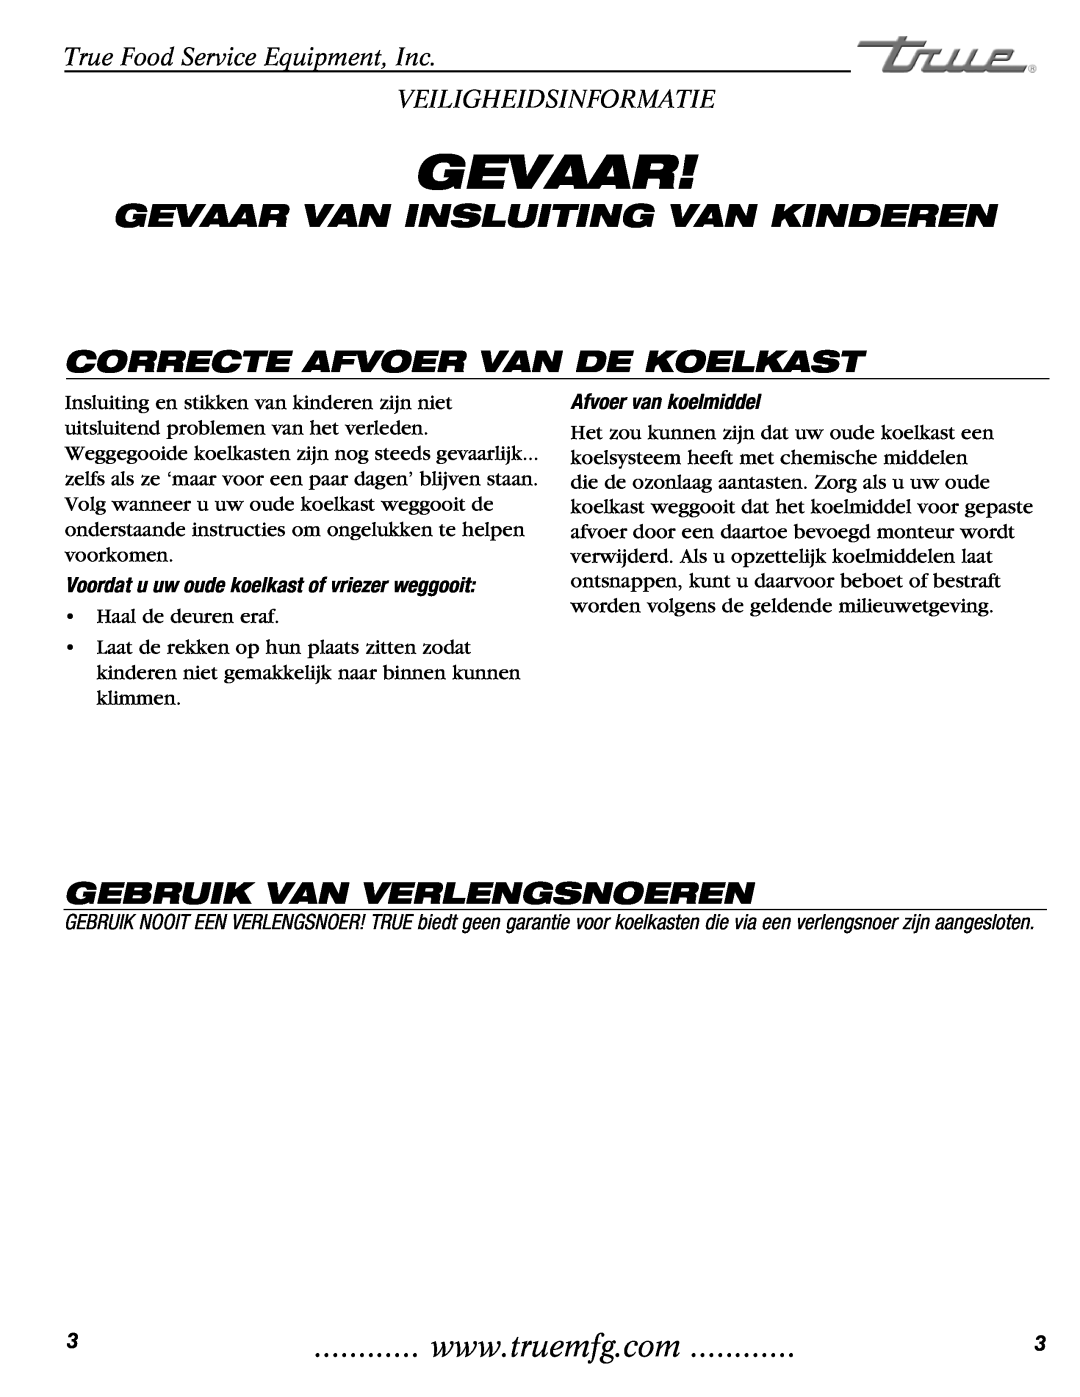 True Manufacturing Company GDM-69, GDM-23, GDM-49 Gevaar Van Insluiting Van Kinderen, Correcte Afvoer Van De Koelkast 